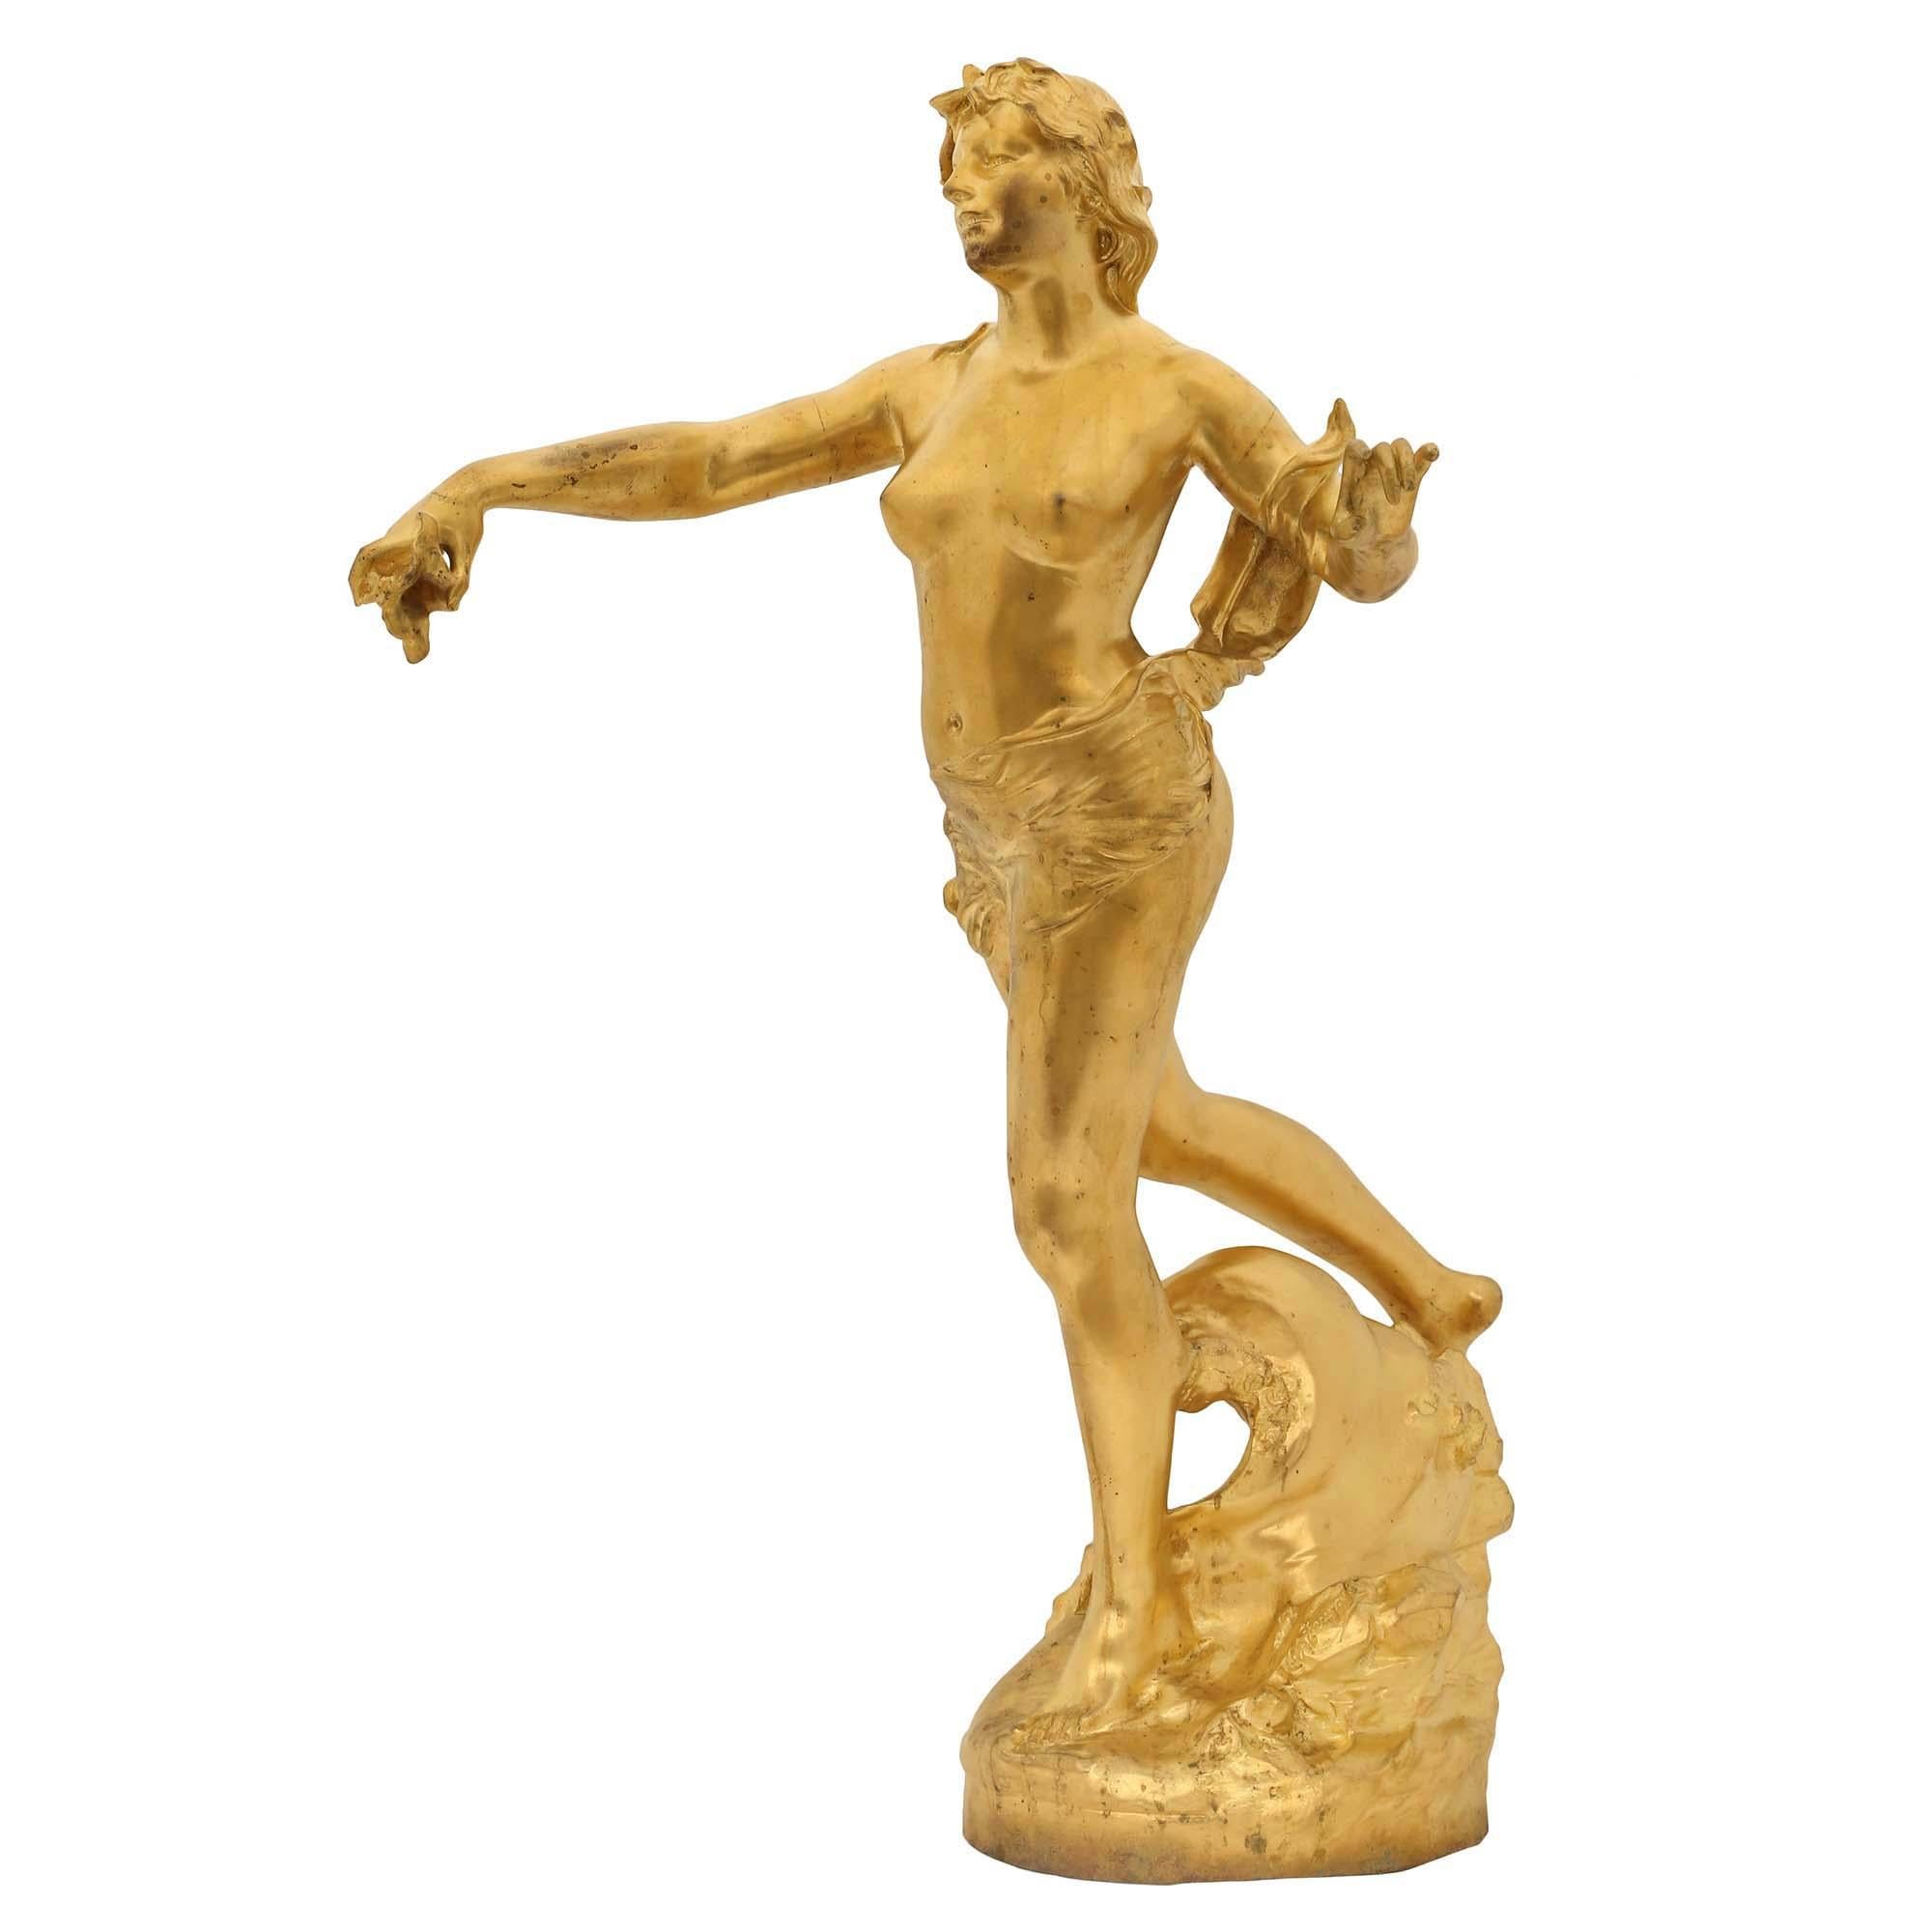 Très élégante statue de Néréides en bronze doré du XIXe siècle, signée Claude-André Férigoule. La sculpture est posée sur une base circulaire avec un motif d'eau et de vagues. La nymphe semble chevaucher les vagues, les bras tendus, tenant une